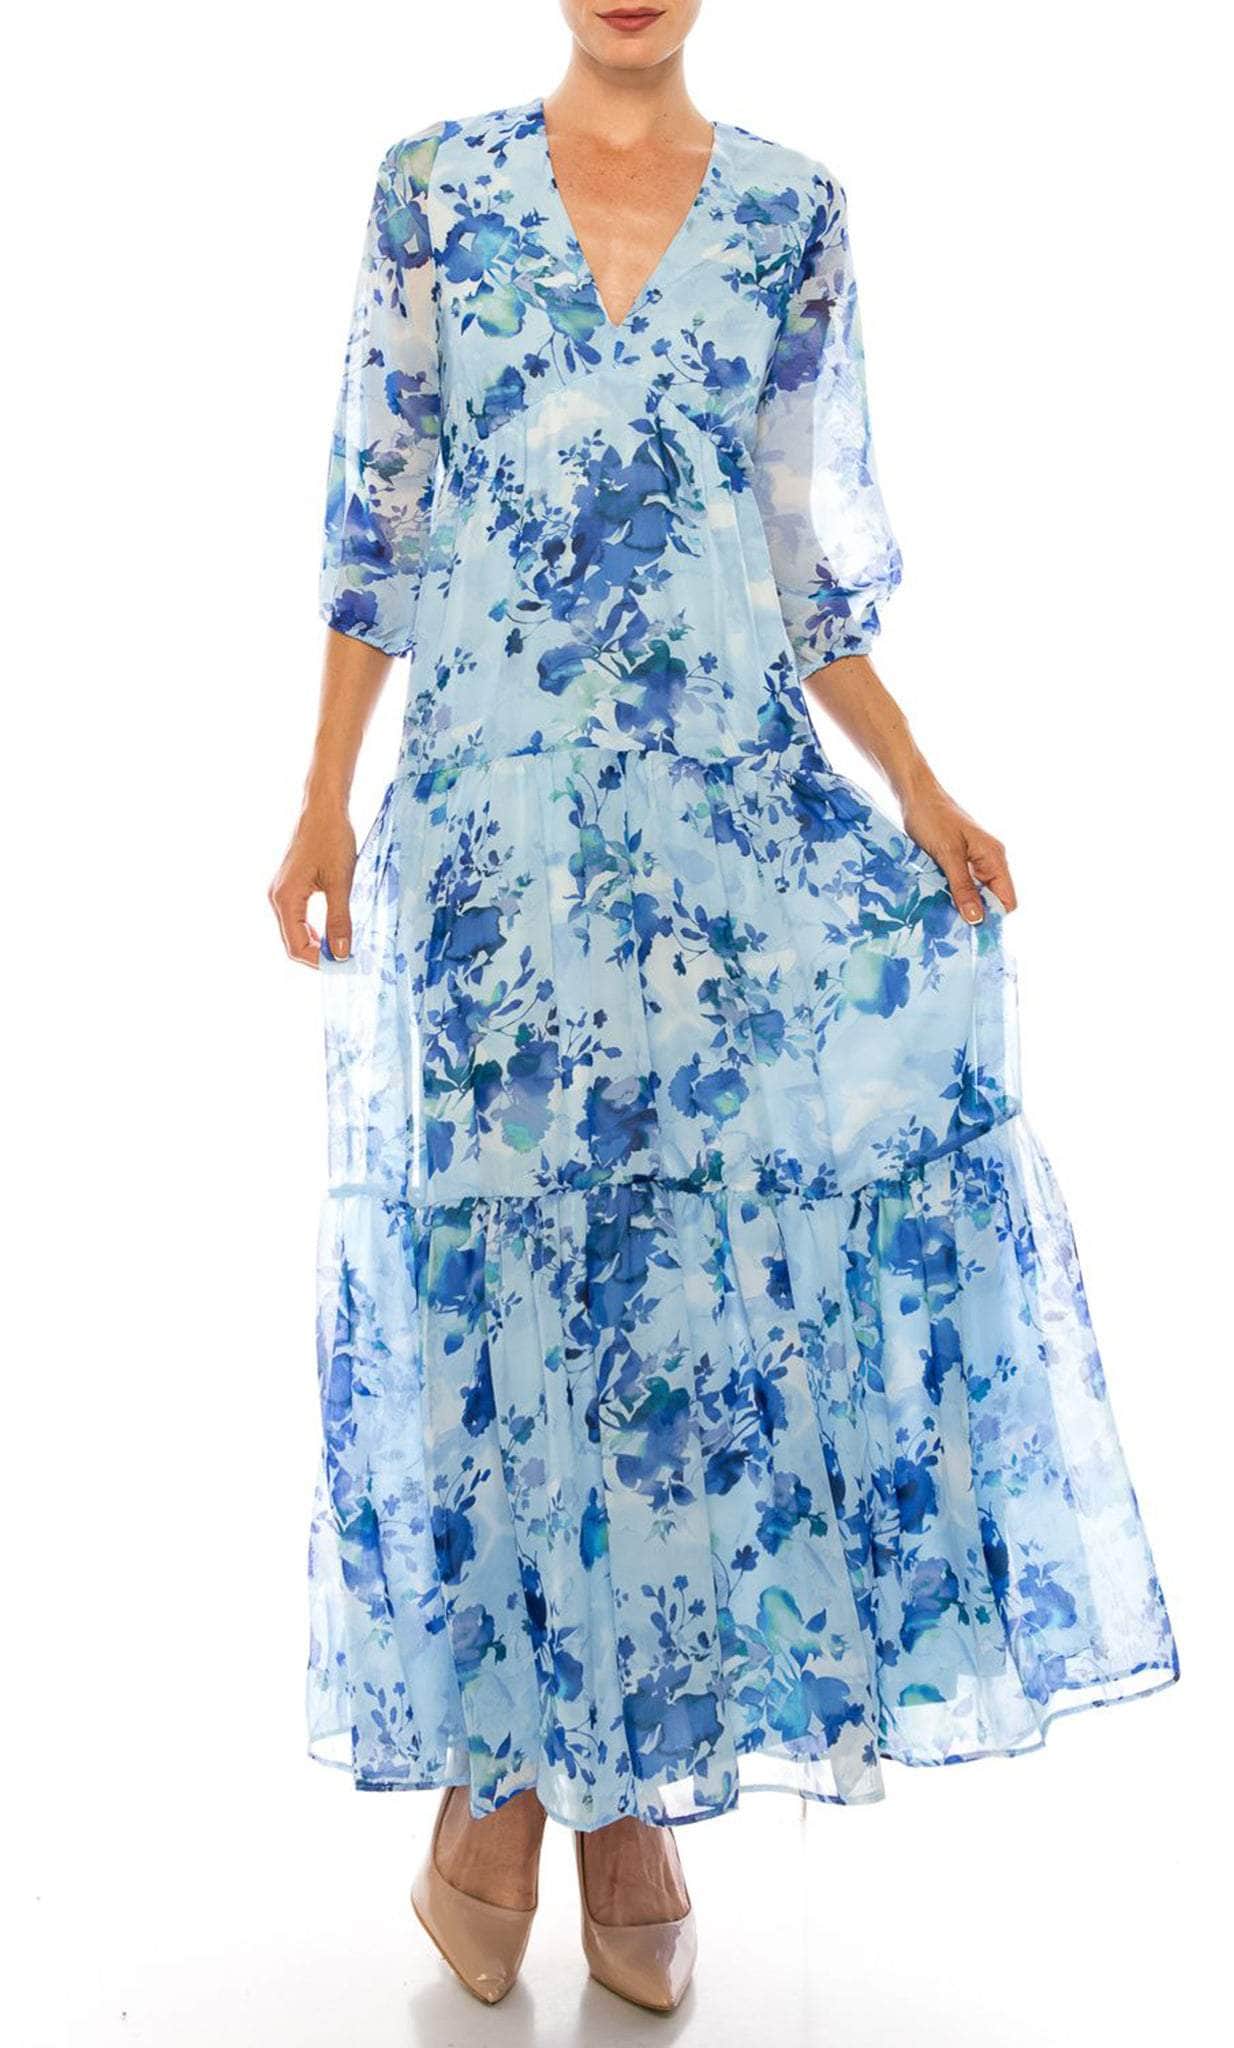 Maison Tara 58367MA - Deep V-Neck Floral Evening Dress Special Occasion Dress 0 / Ivory Aqua